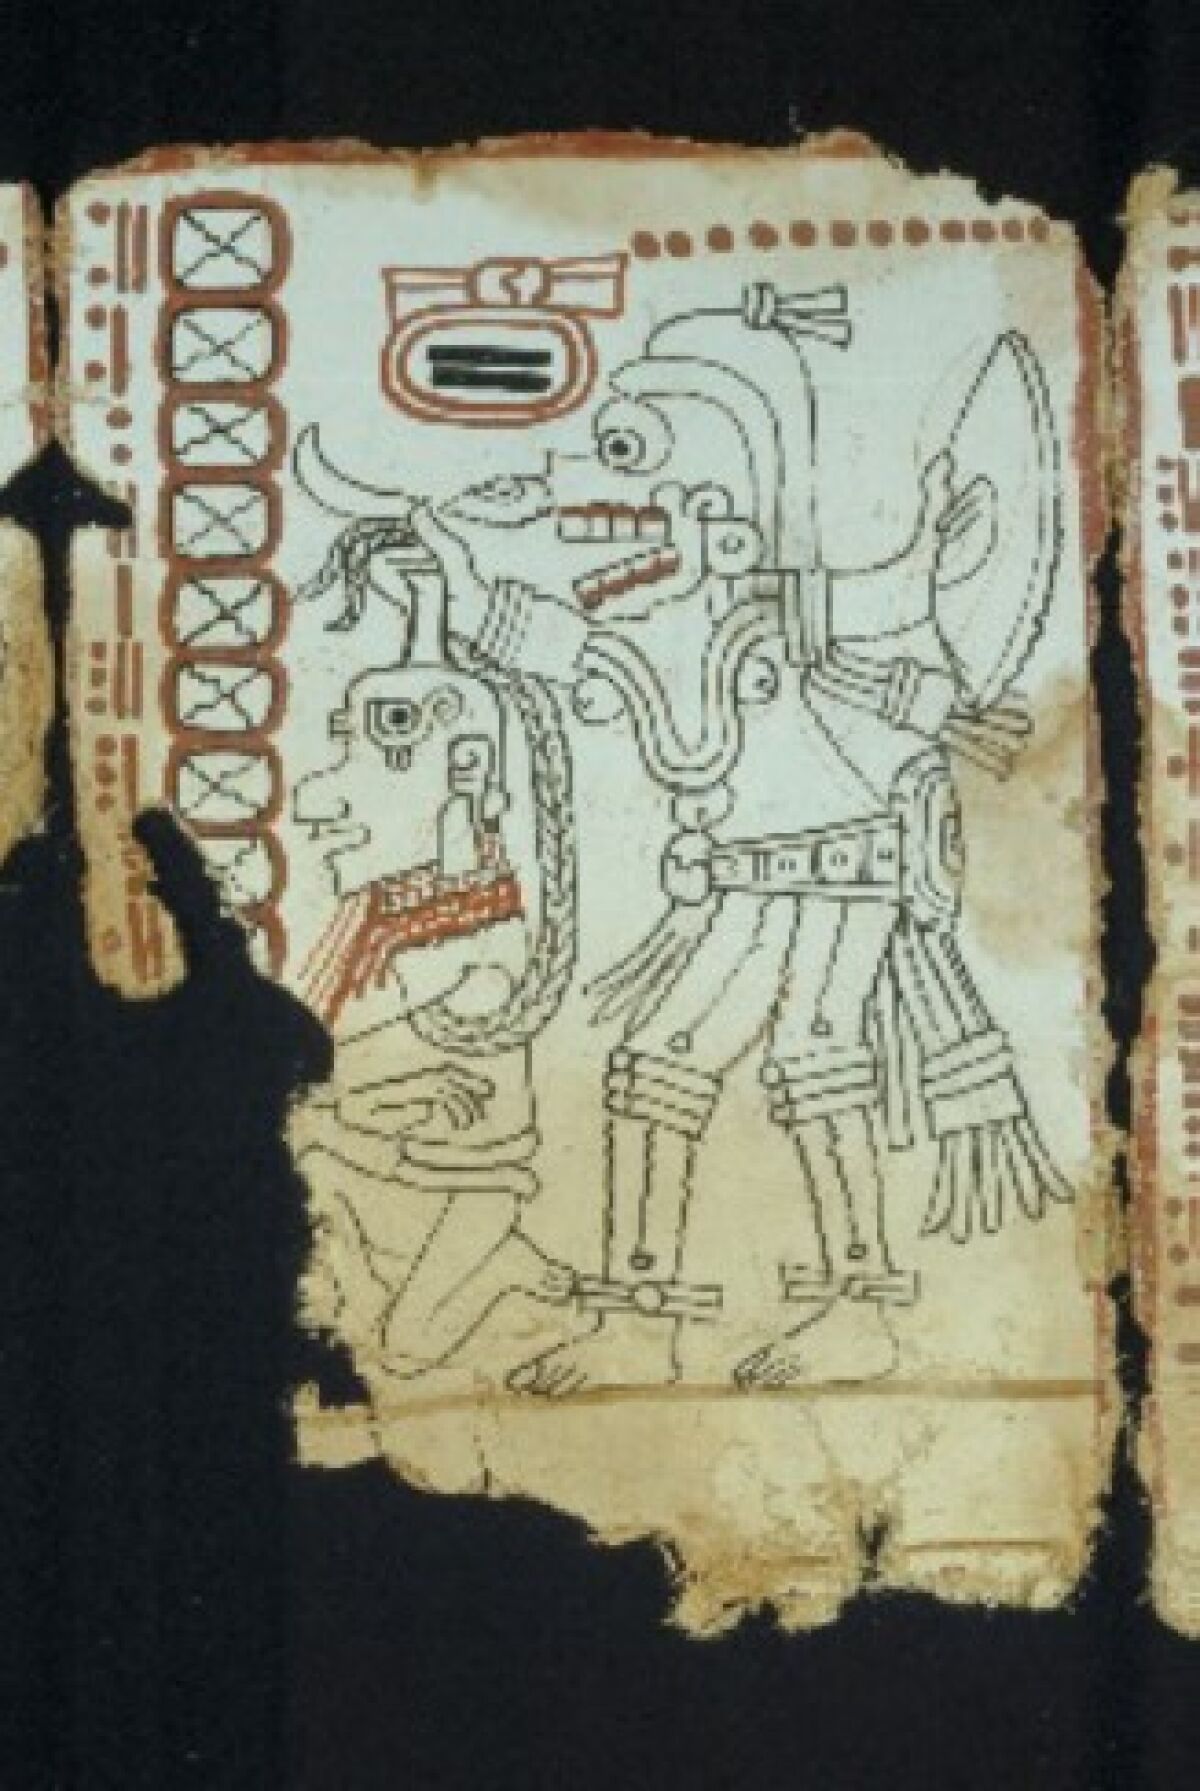 Pagina 4 del Códice Maya de México,